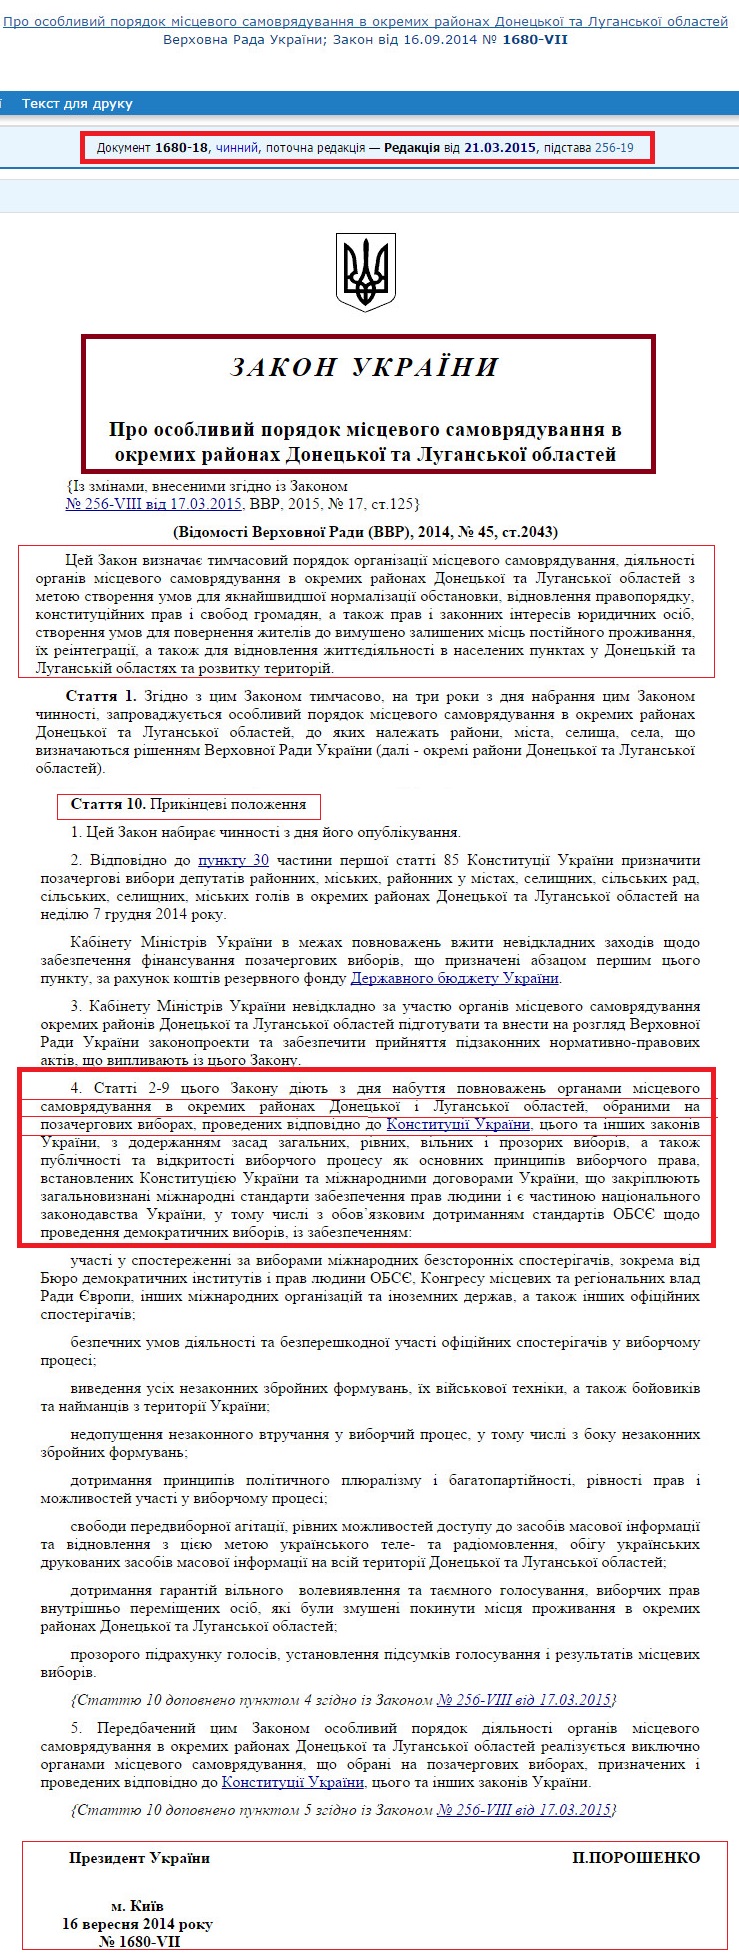 http://zakon5.rada.gov.ua/laws/show/1680-18